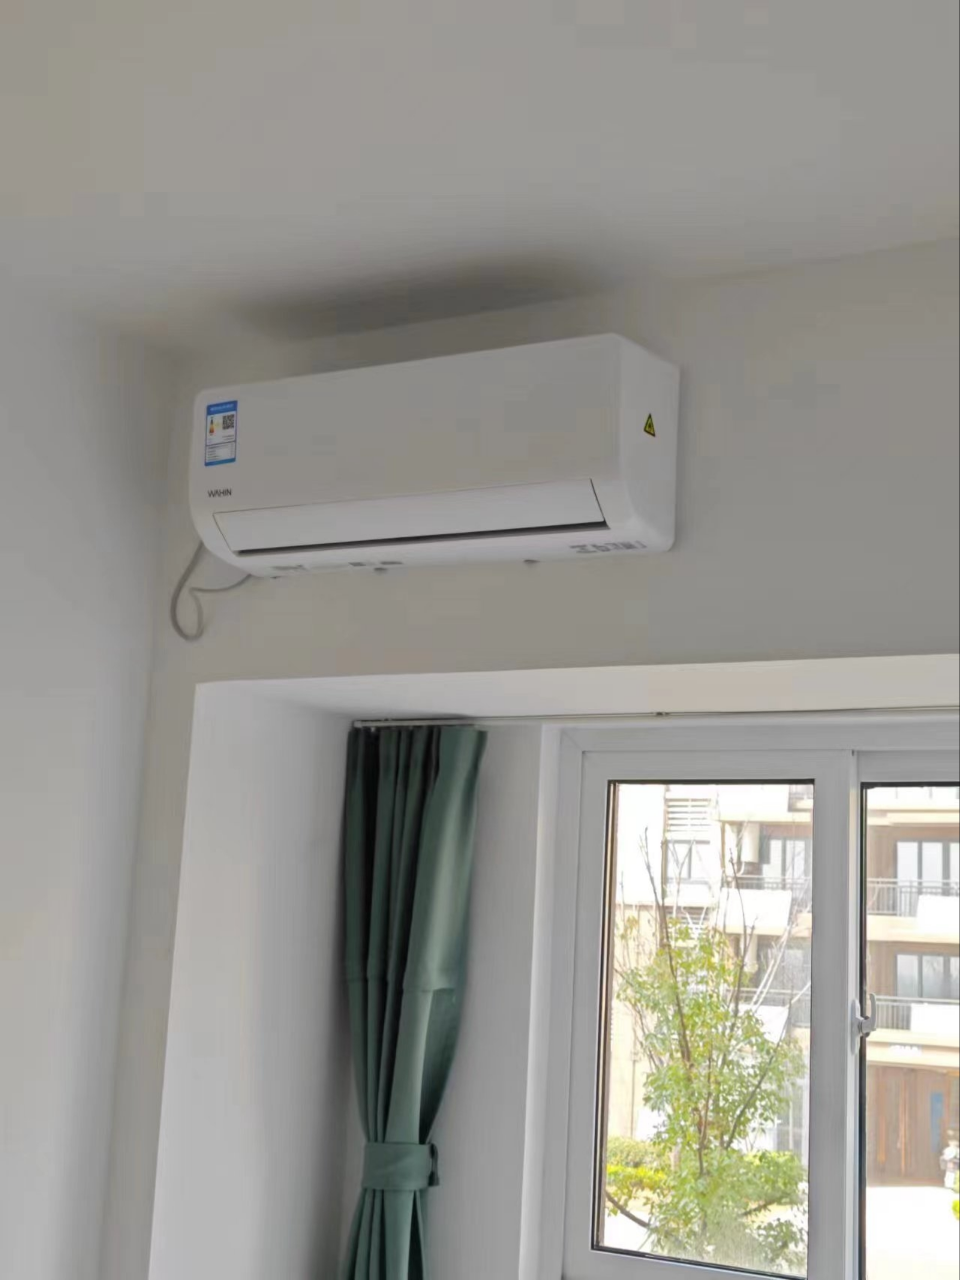 华凌空调 新能效 变频冷暖 自清洁 大1匹 客厅卧室挂式空调挂机 以旧换新 小家智能 KFR-26GW/N8HA3 Ⅱ晒单图